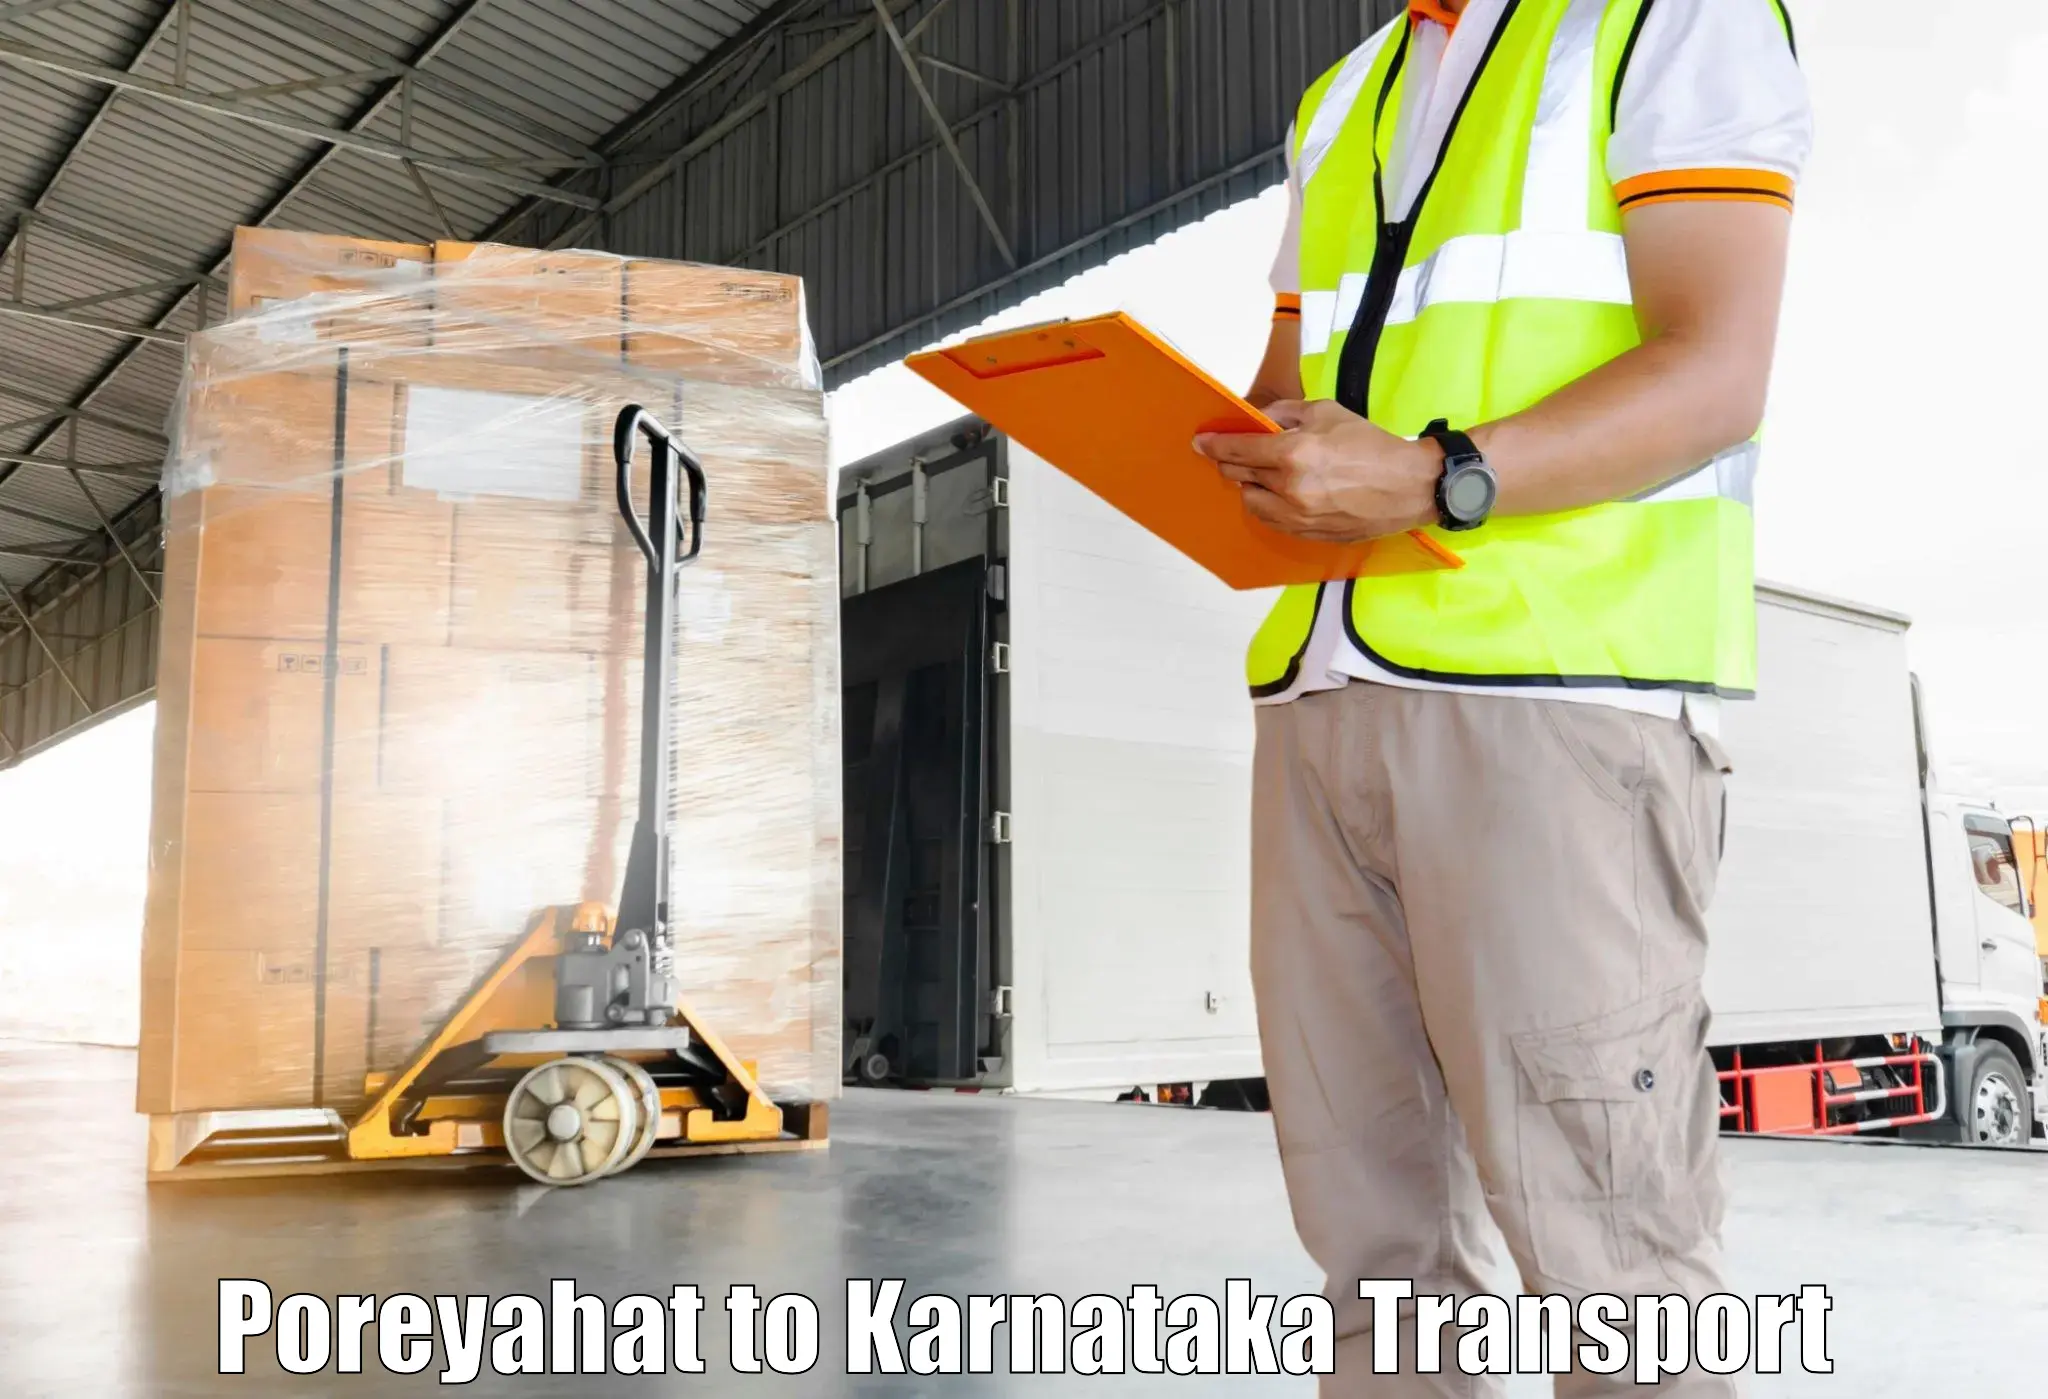 Nearest transport service Poreyahat to Kanjarakatte